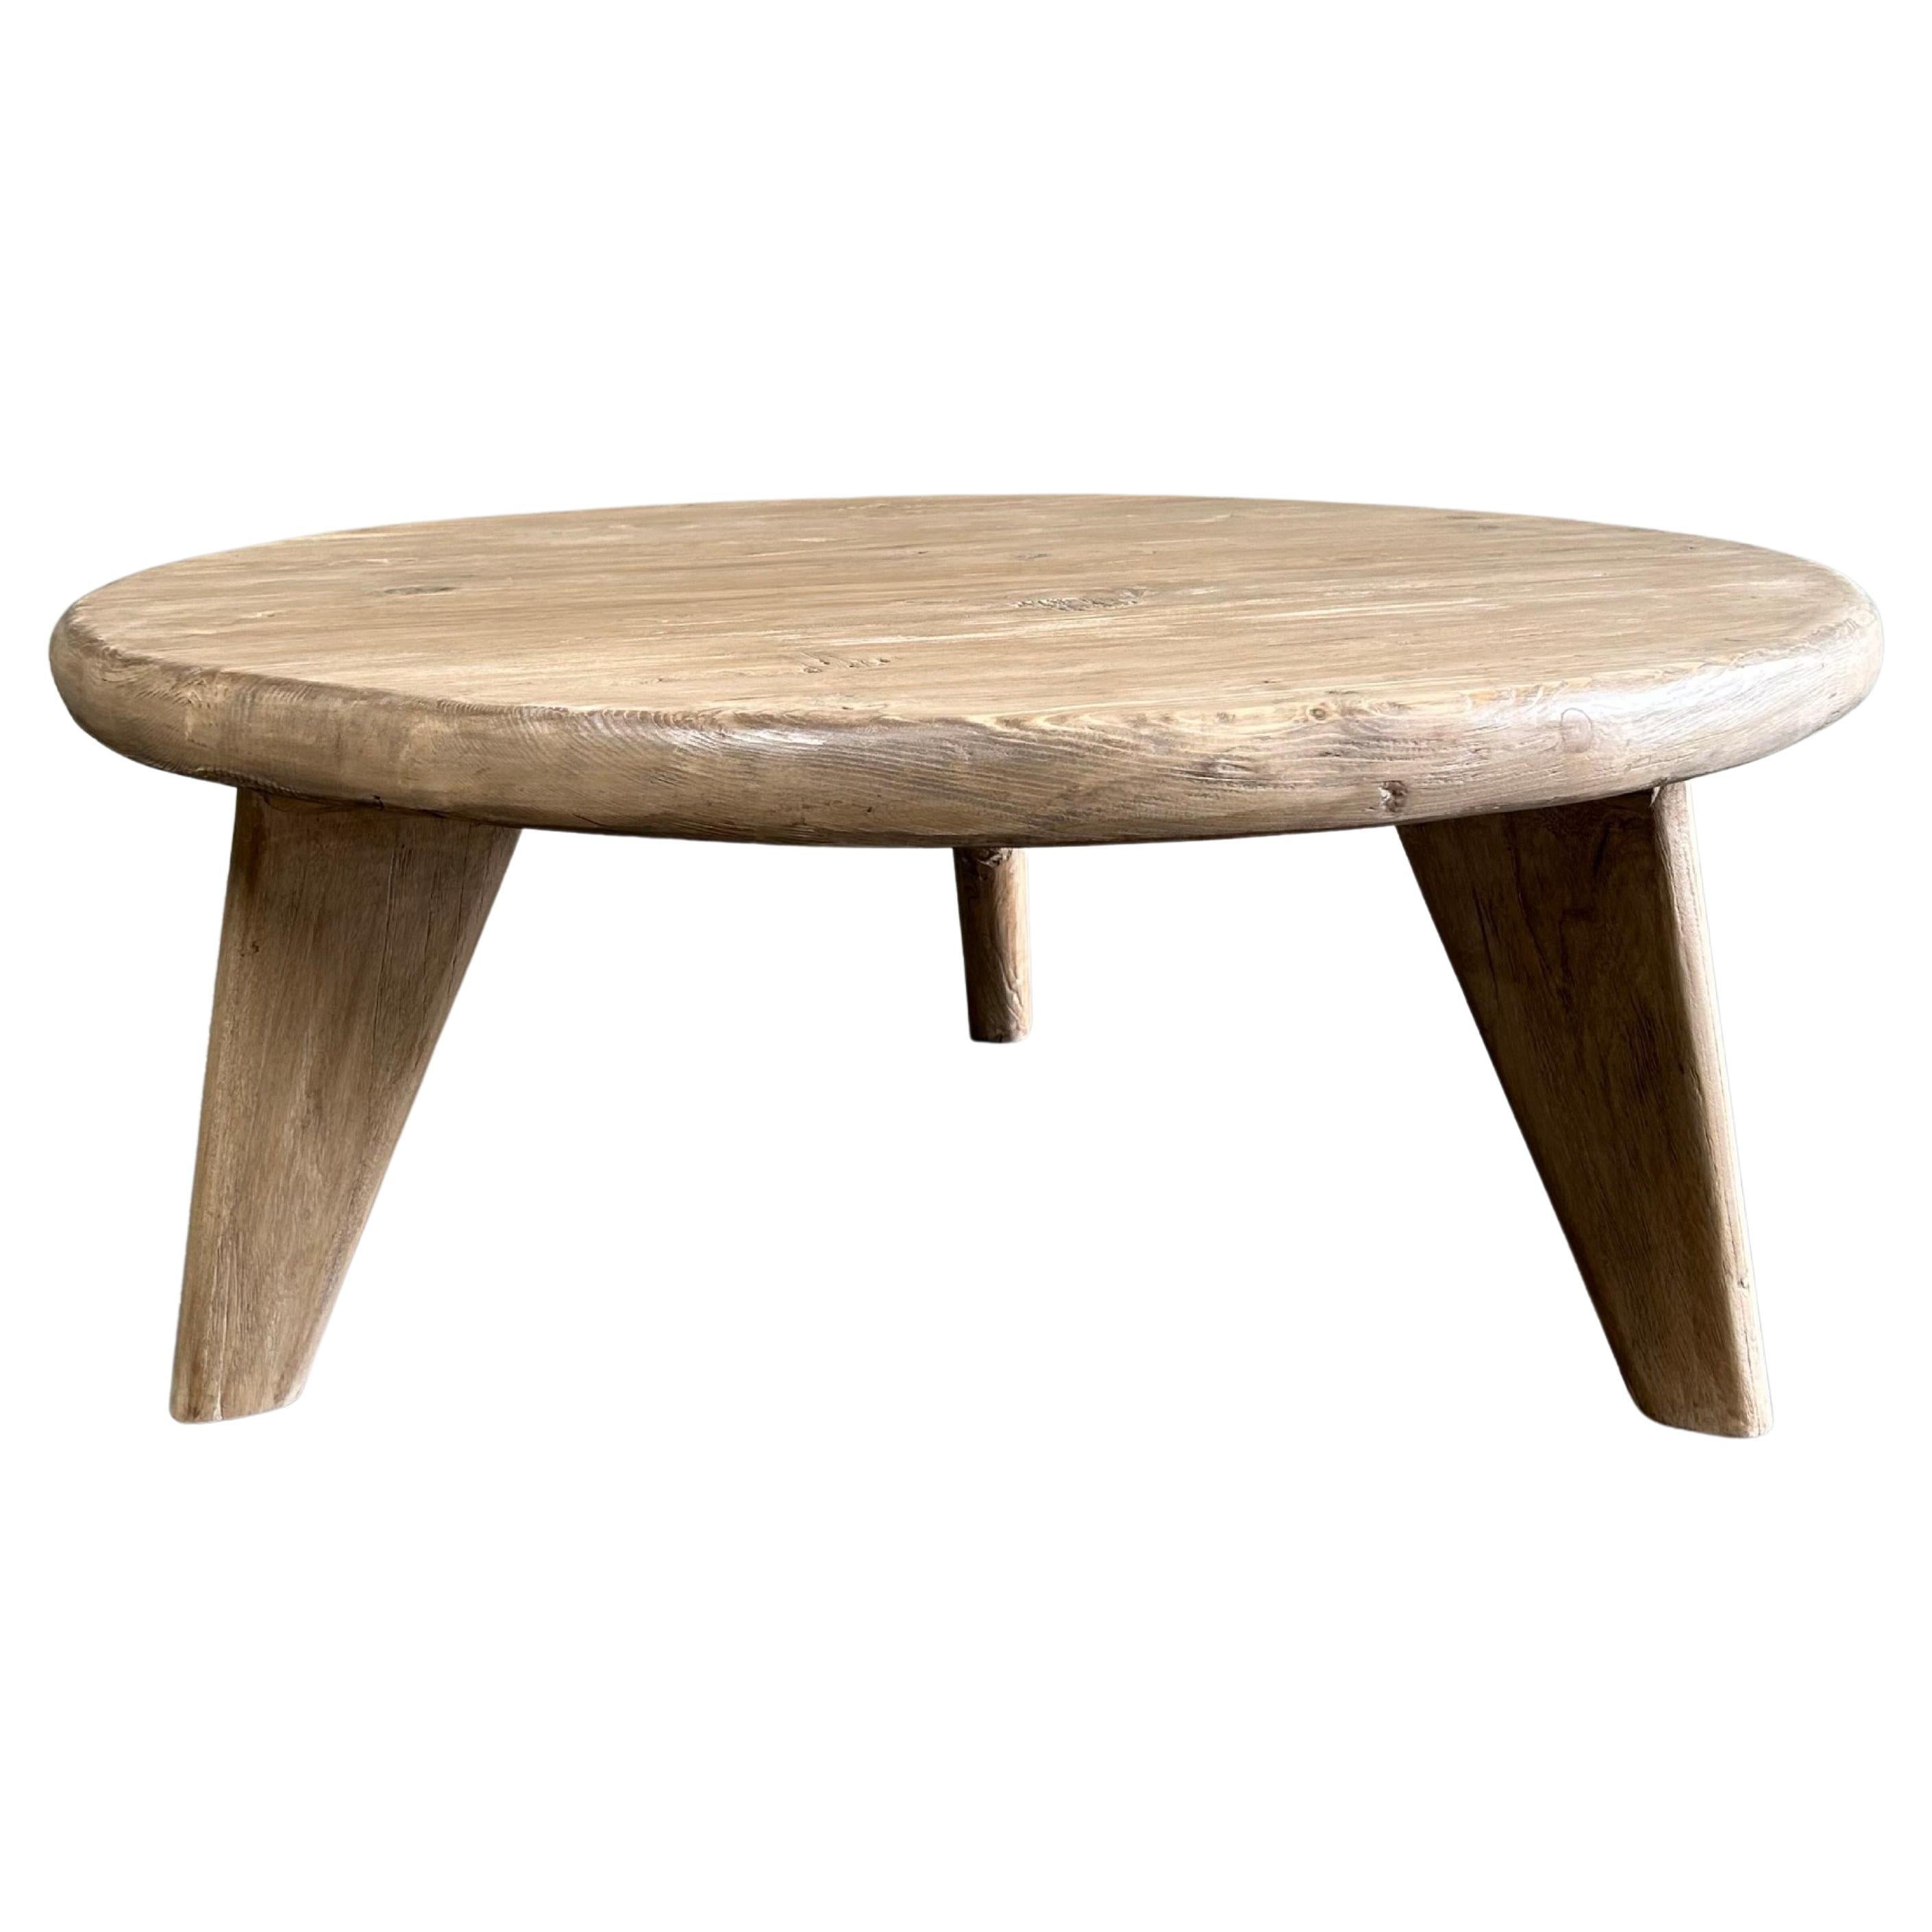 Table basse ronde en bois d'orme récupéré sur mesure avec 3 pieds